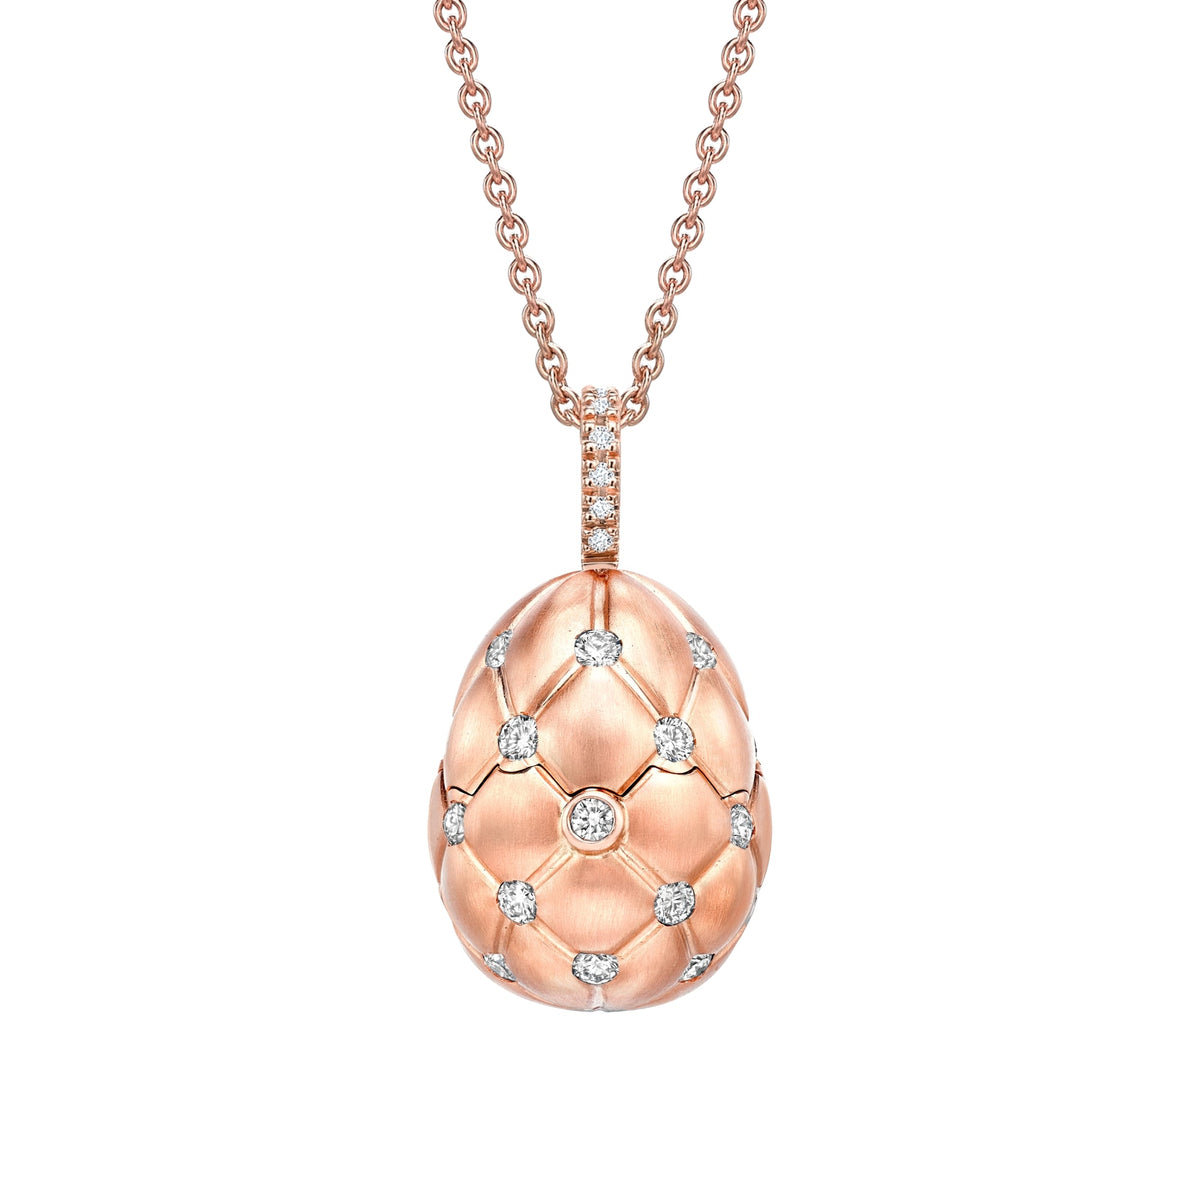 Fabergé Treillage 18ct Rose Gold Diamond Ruby Heart Surprise Egg Pendant